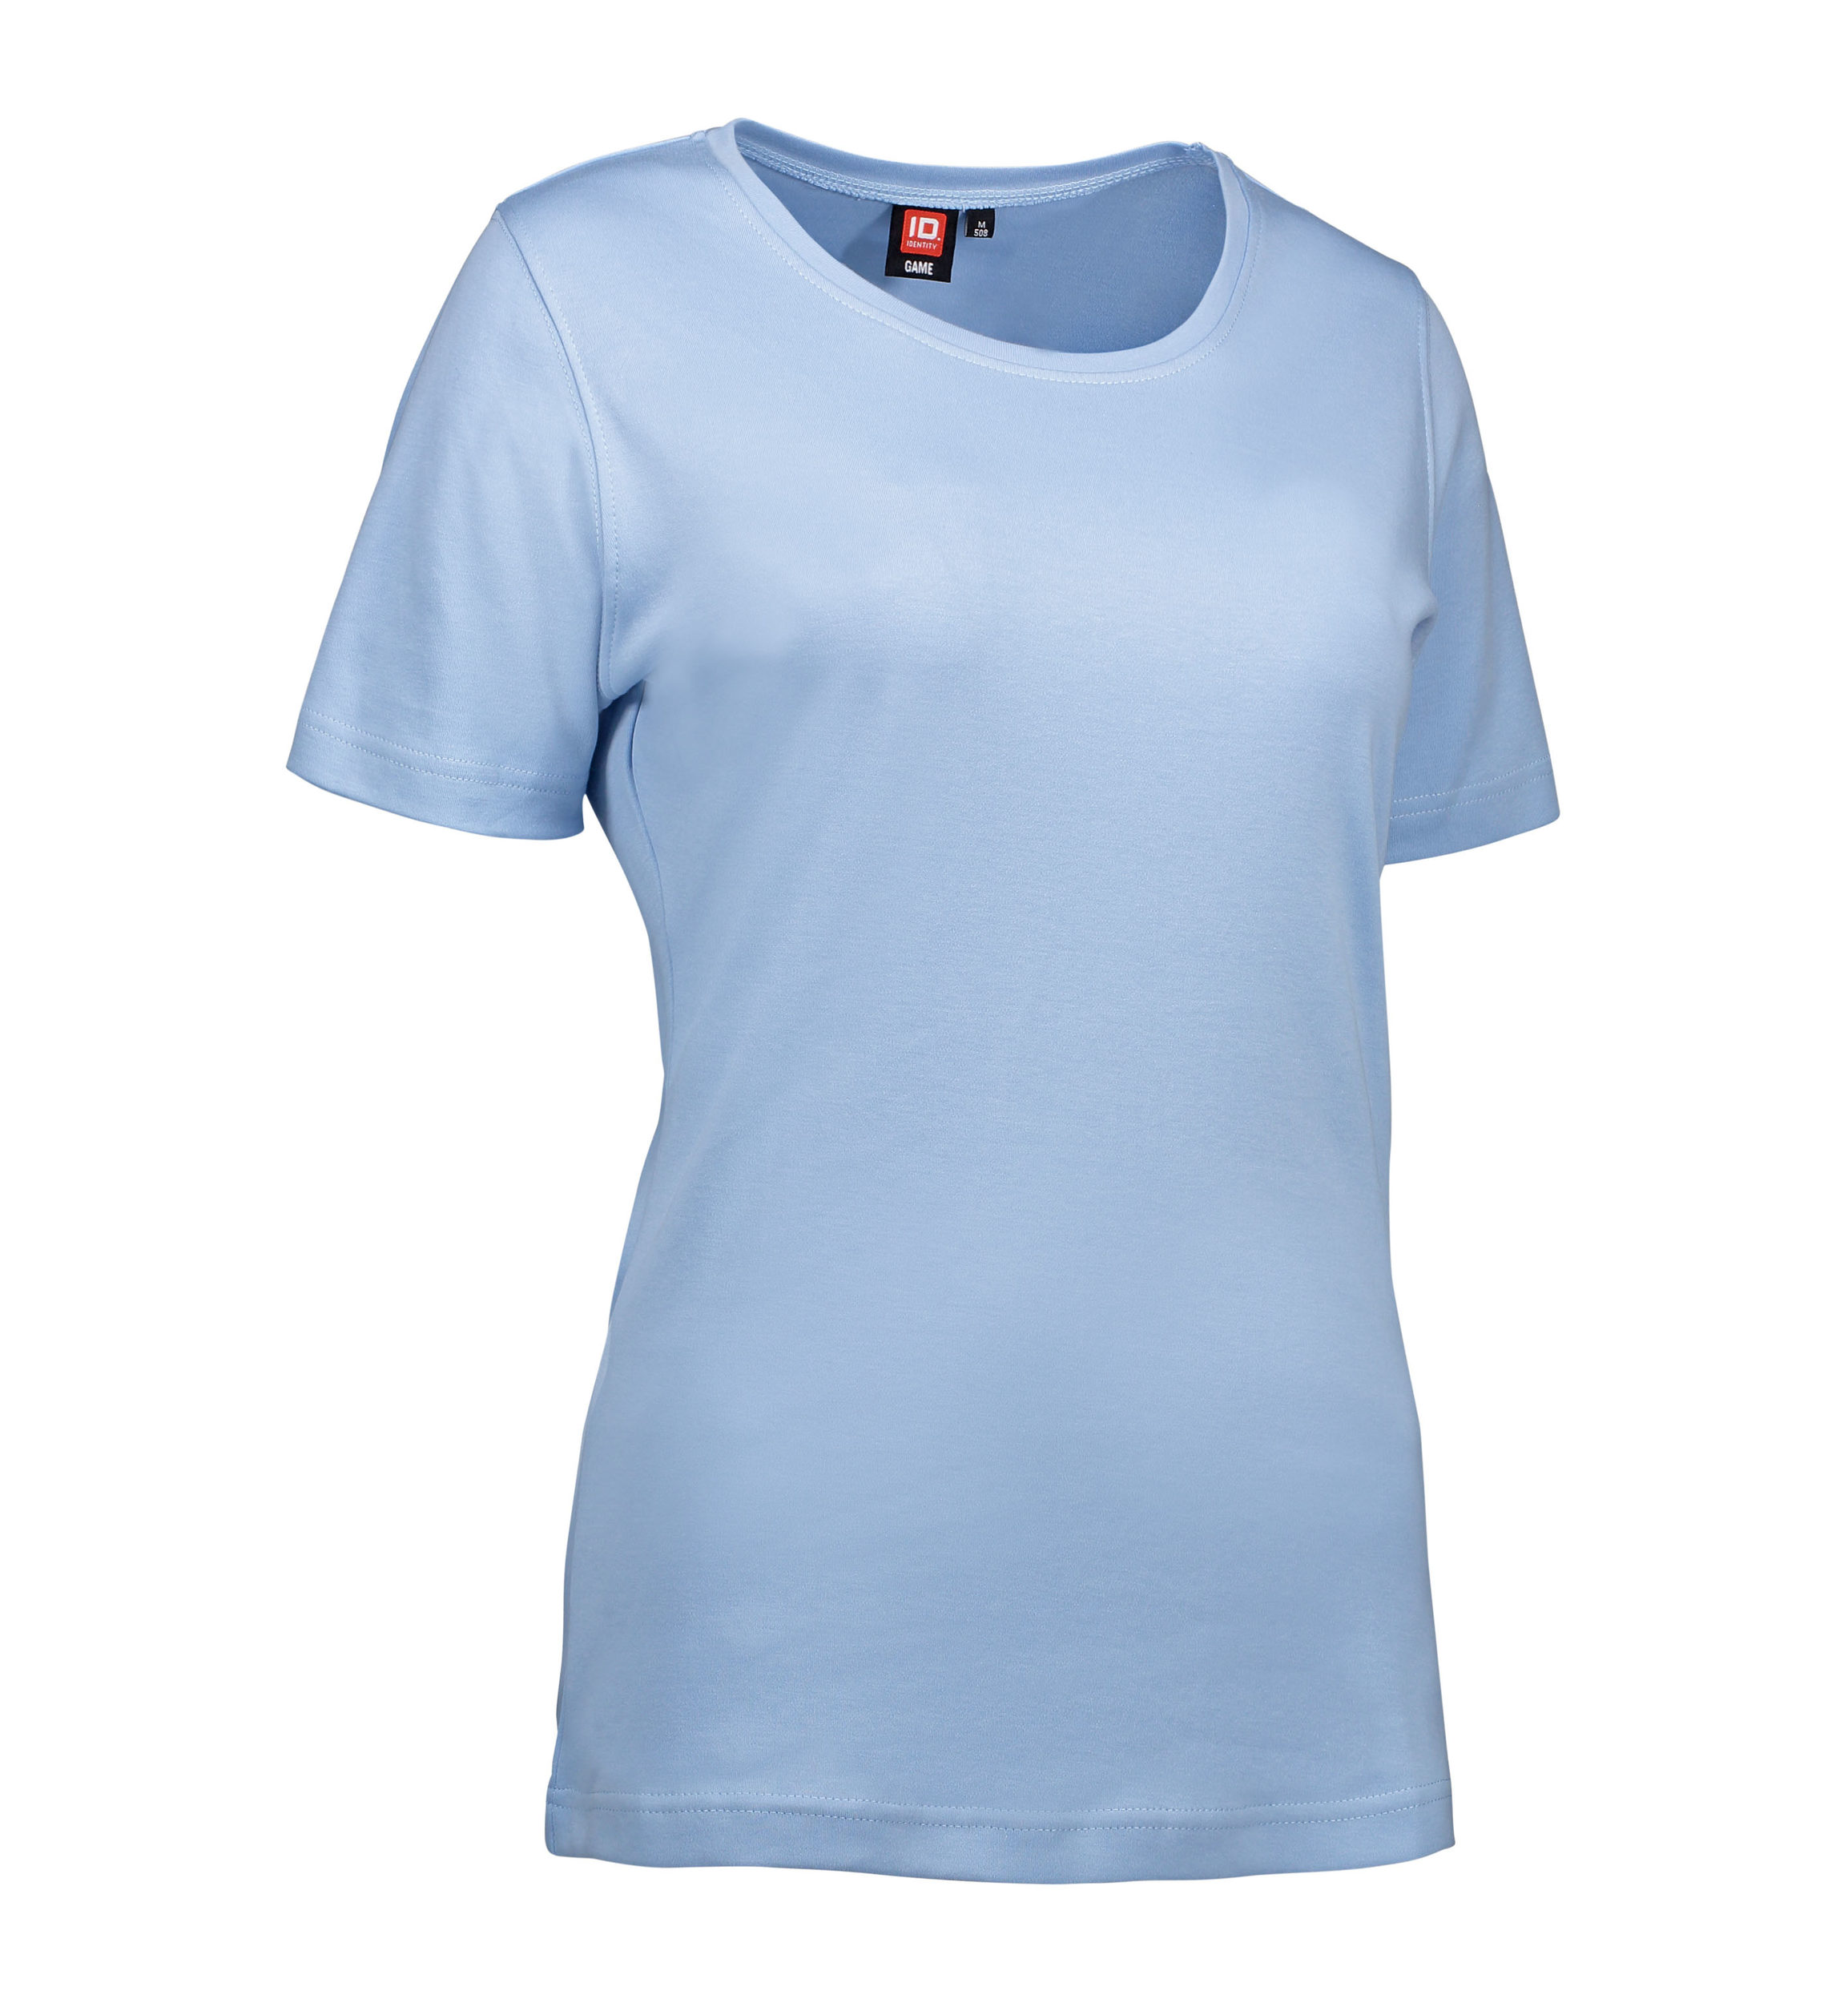 Se Lyseblå t-shirt med rund hals til damer - S hos Sygeplejebutikken.dk